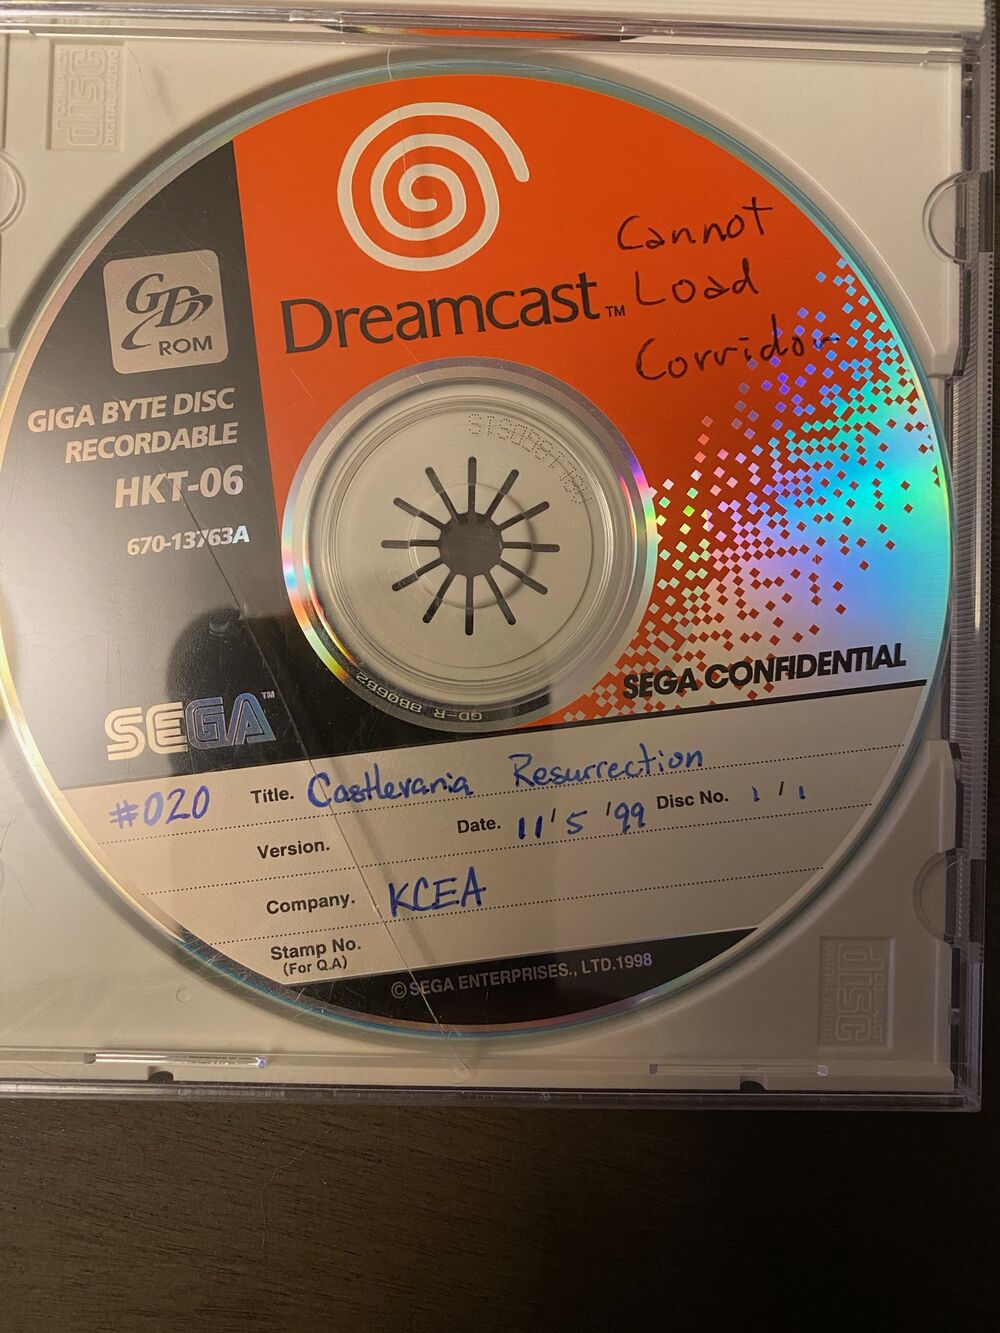 Clastlevania Resurrection reaparece em cd para Dreamcast